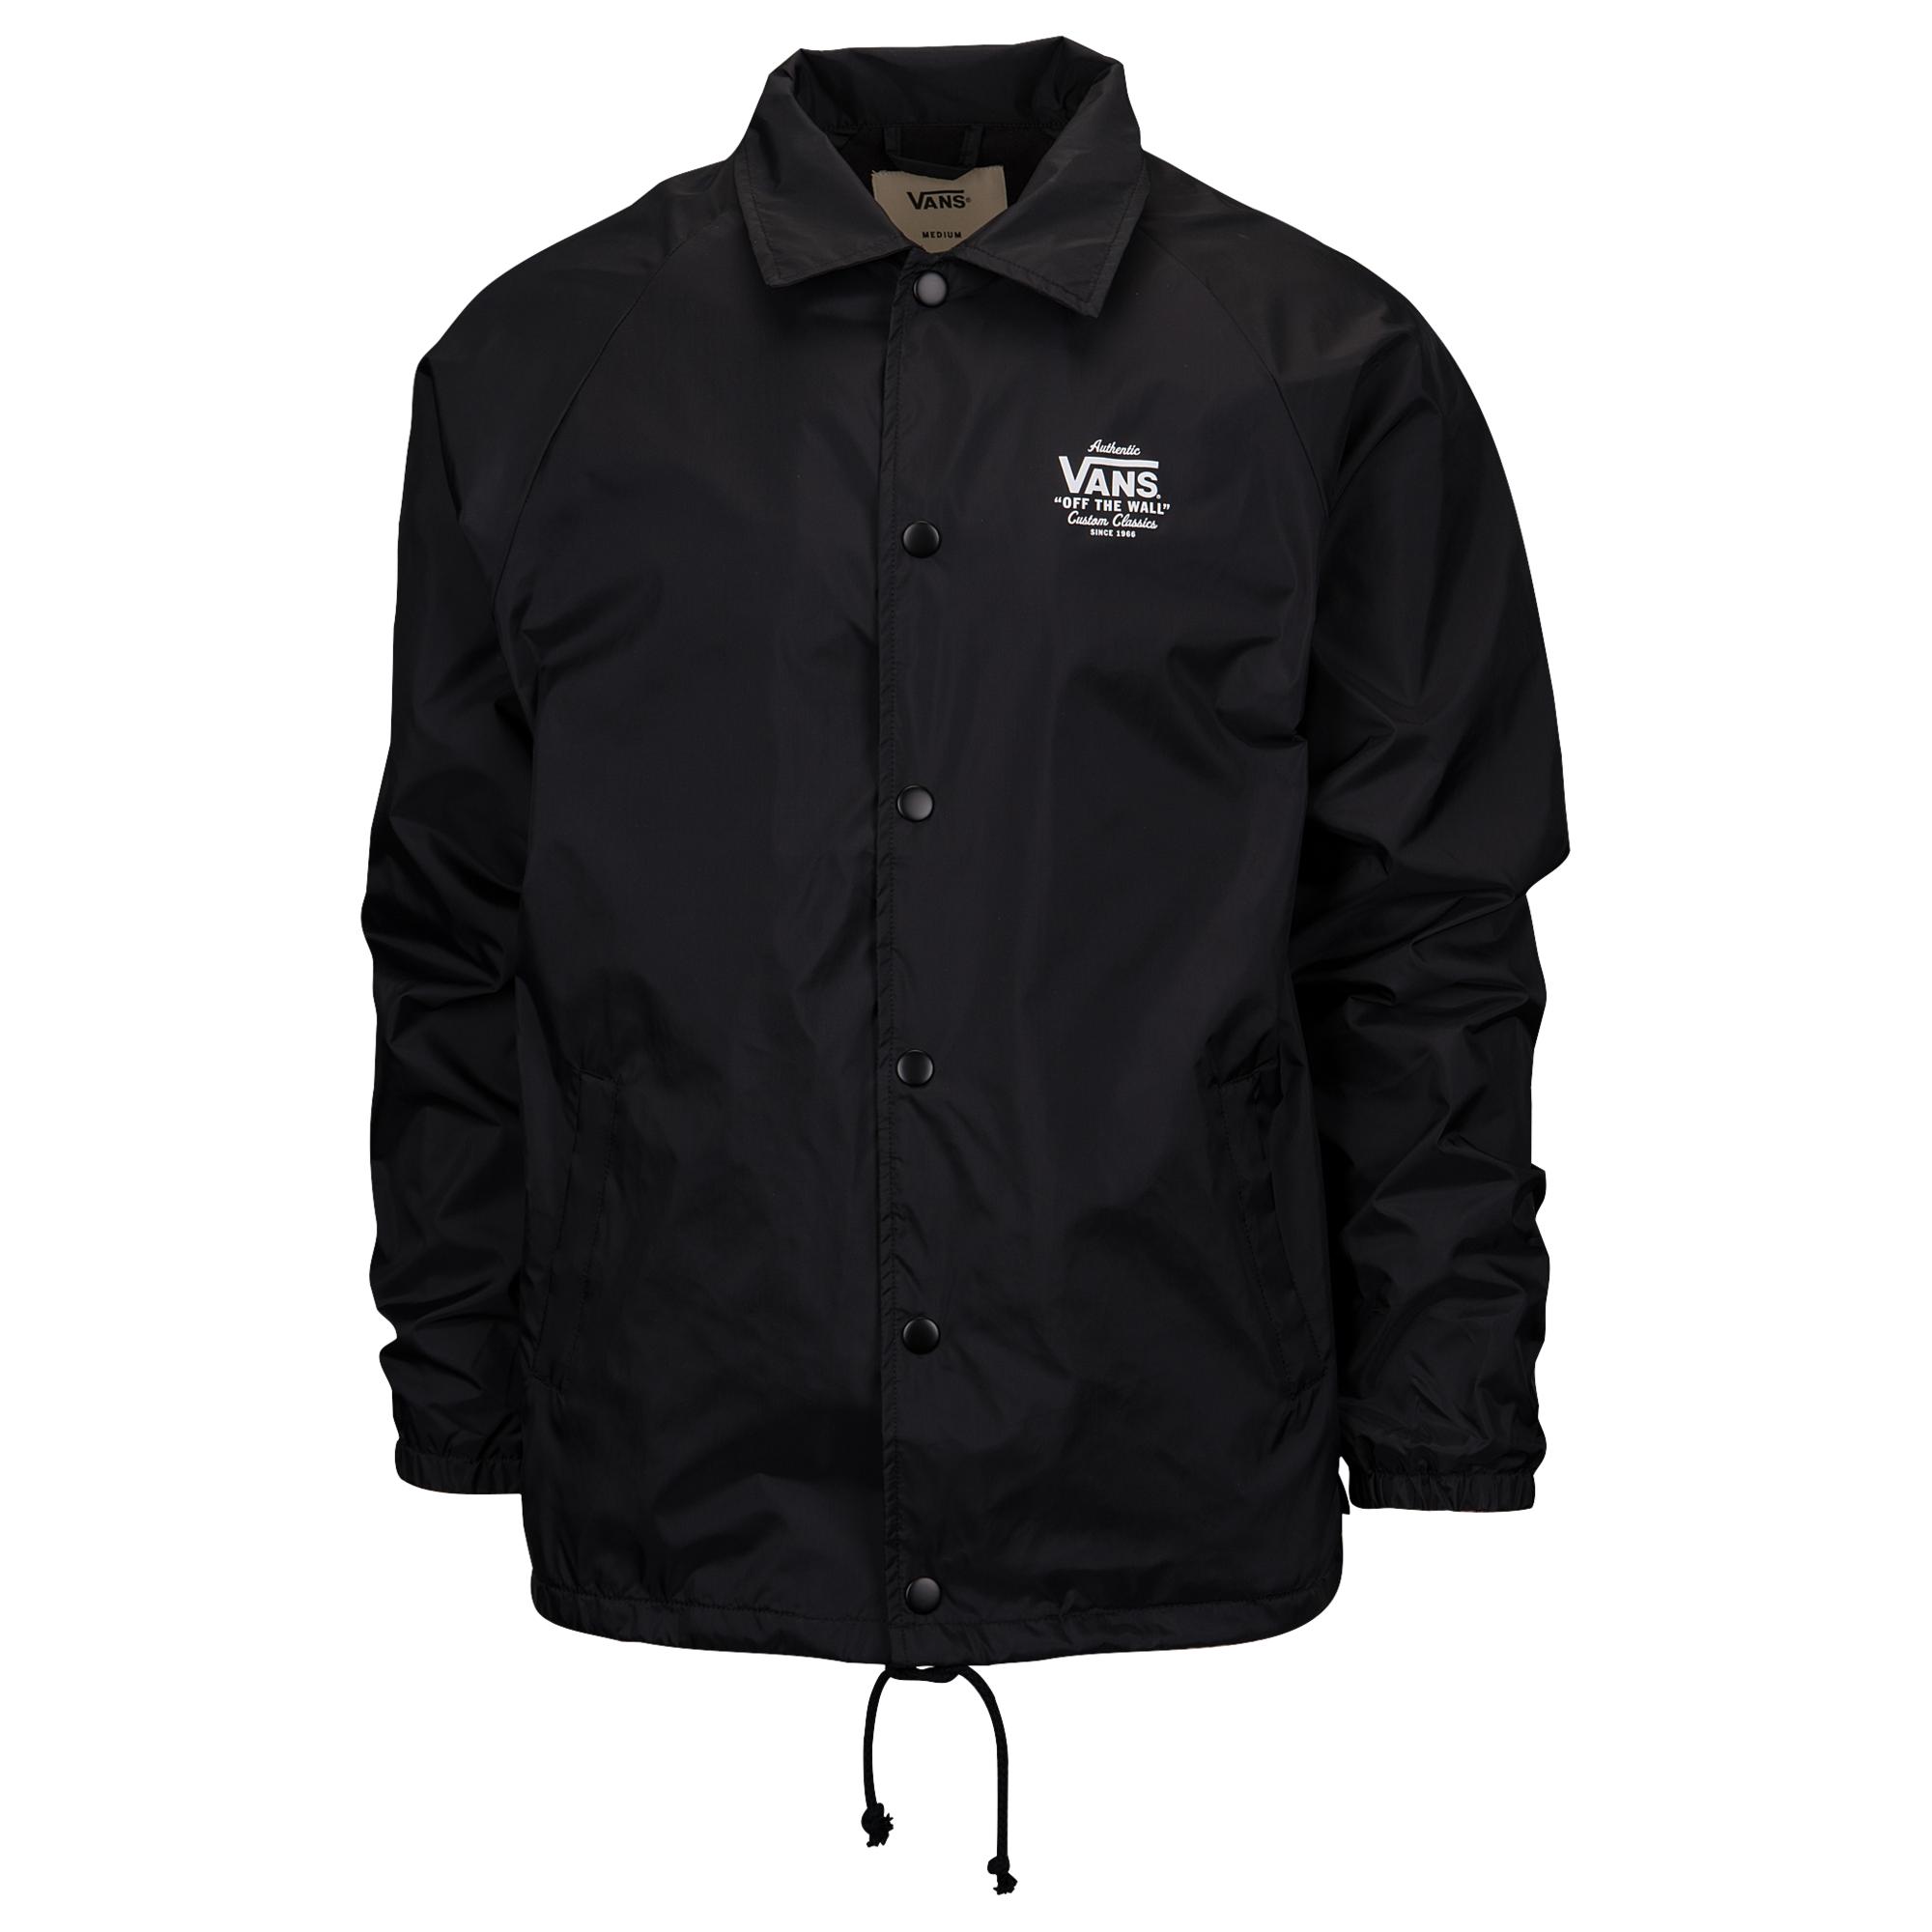 Vans Torrey Jacket in Black for Men - Lyst